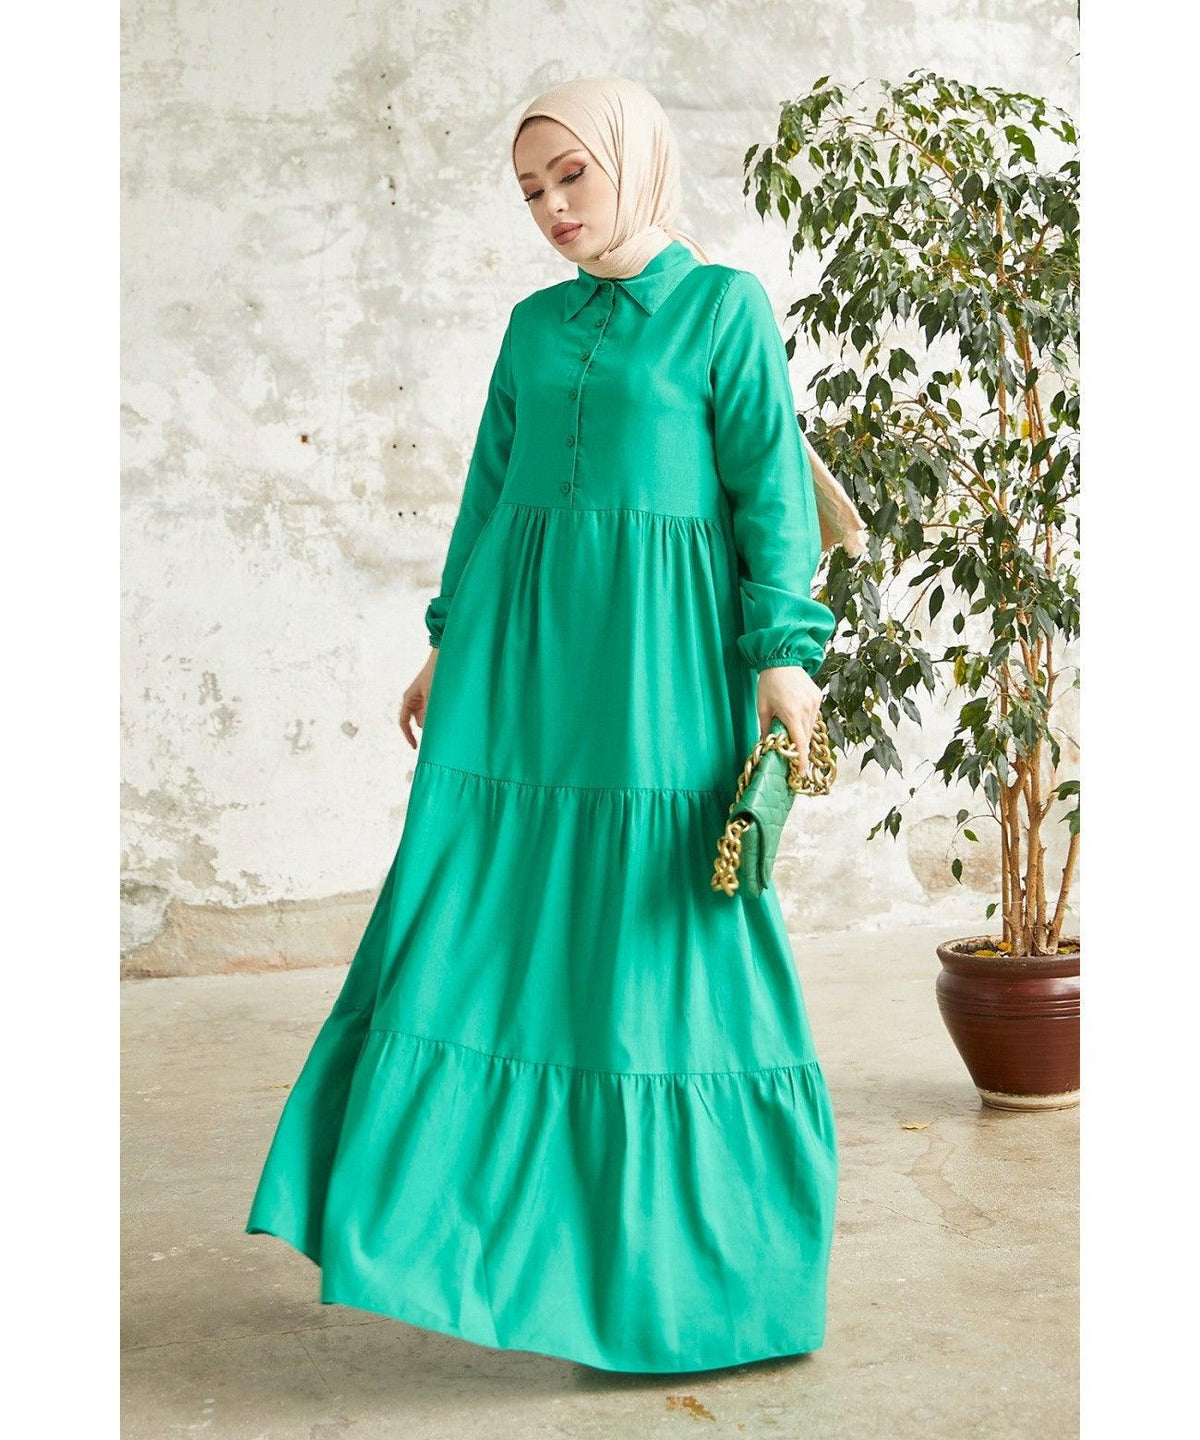 Modest Long Collar Dress for Women - Green